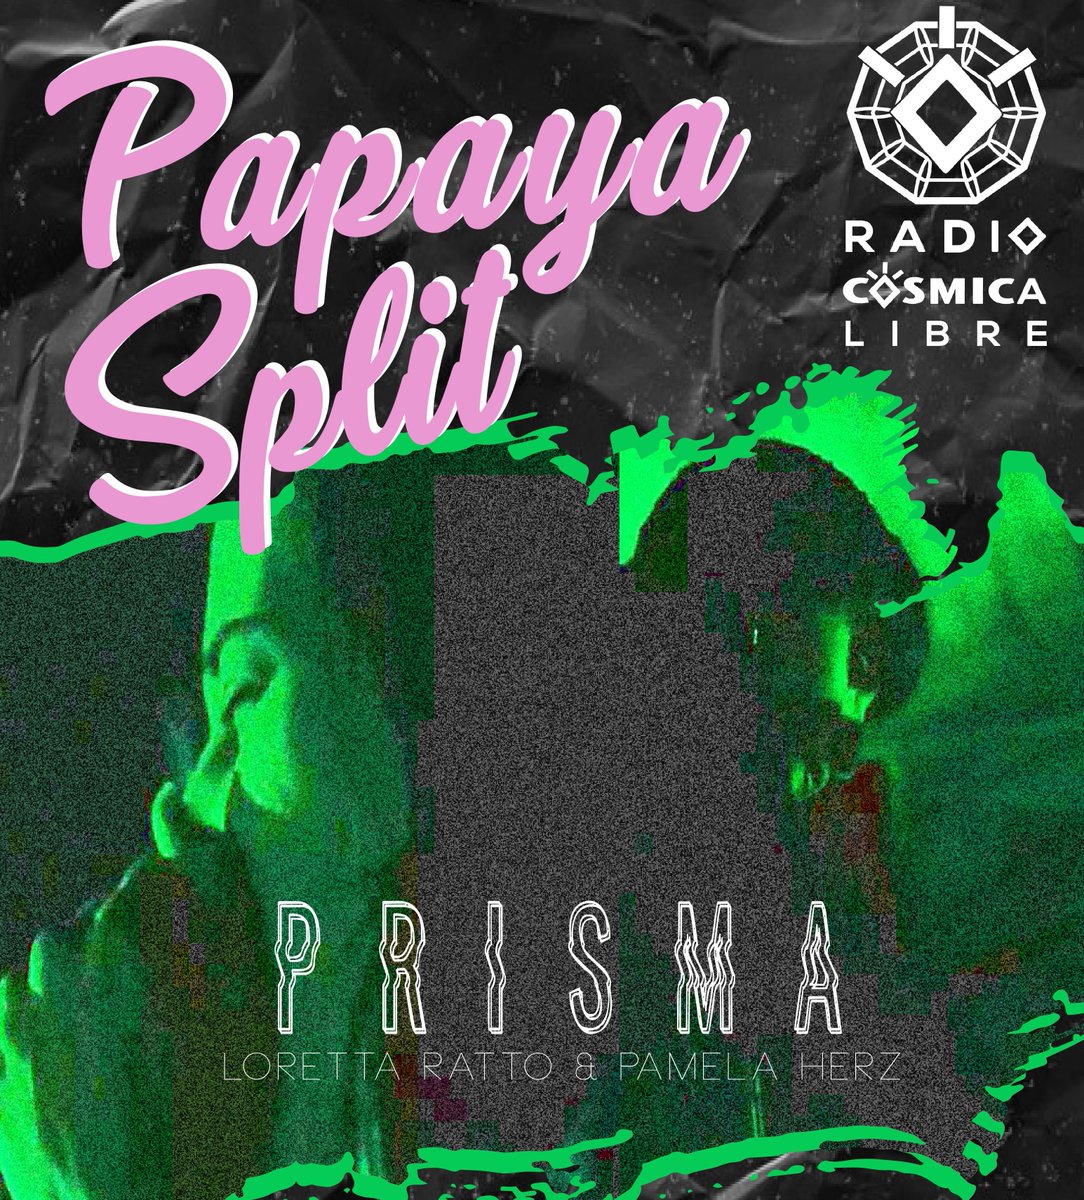 Escucha de nuevo los capítulos de #PapayaSplit todos los viernes a las 2pm. Una serie de entrevistas con proyectos en la música experimental y arte sonoro. 
Sintoniza por radiocosmicalibre.org
#mexico #papayasplit #musica #experimental #mujeresquehacenruido #tecnologia #dialogo